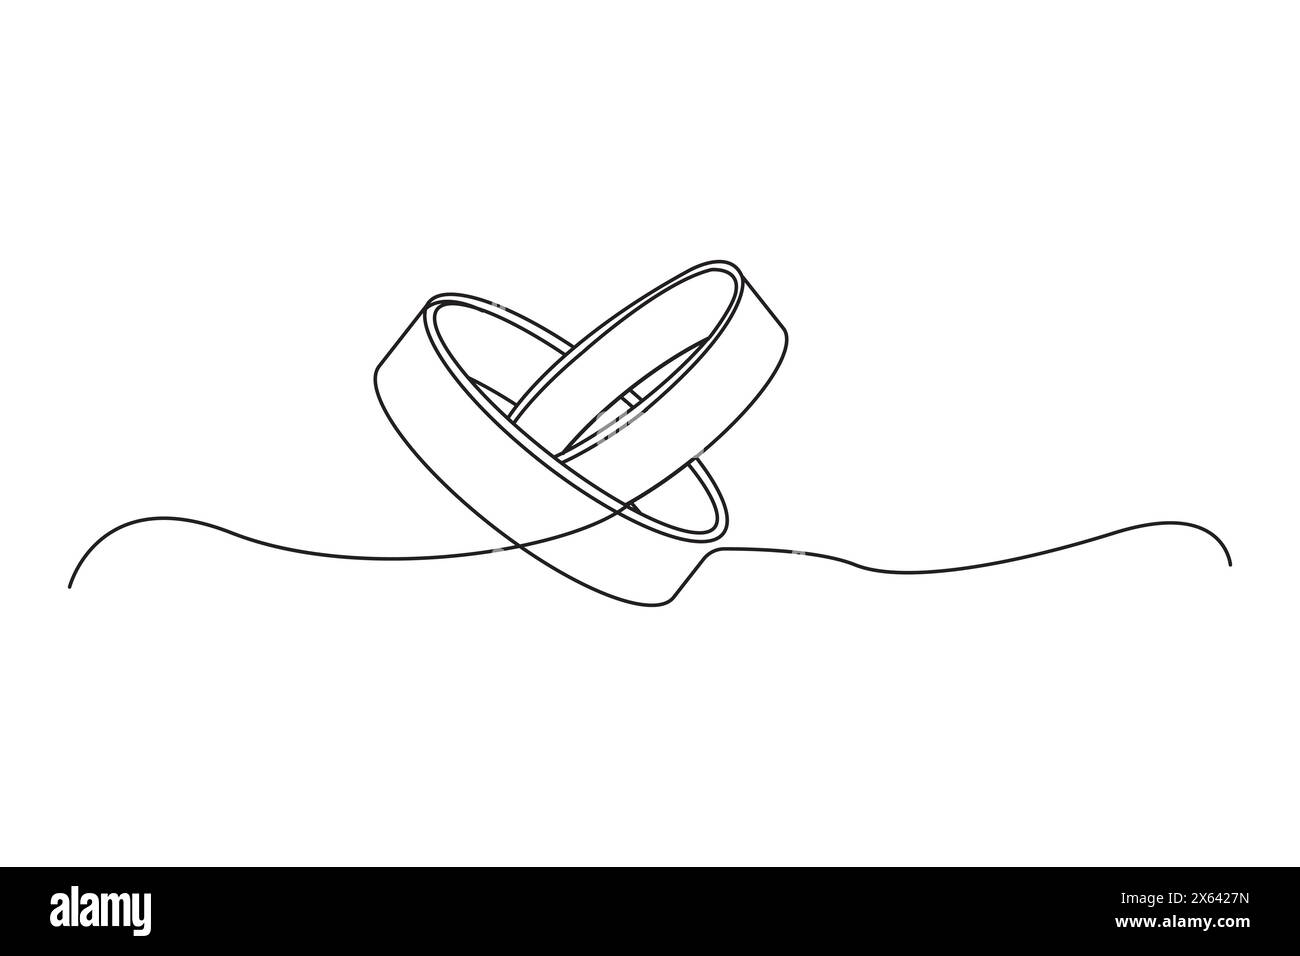 Eine einfache und elegante schwarz-weiße Linienzeichnung aus zwei ineinander greifenden Eheringen, perfekt für moderne Hochzeitsmotive. Stock Vektor